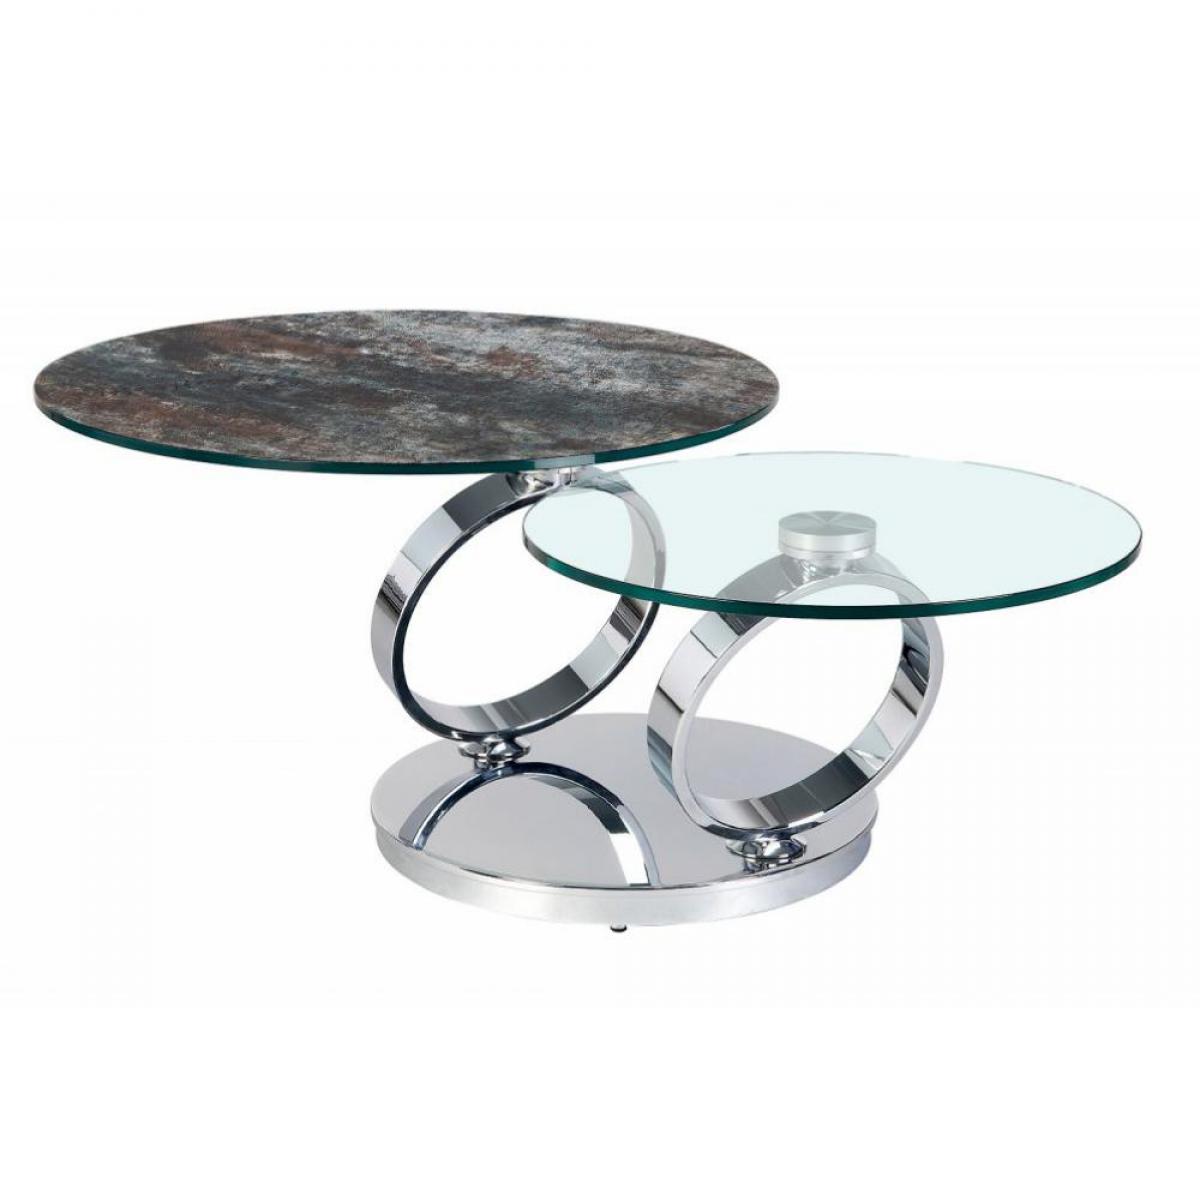 Inside 75 - Table OLYMPE à plateaux pivotants en verre et céramique ANTHRACITE - Tables à manger